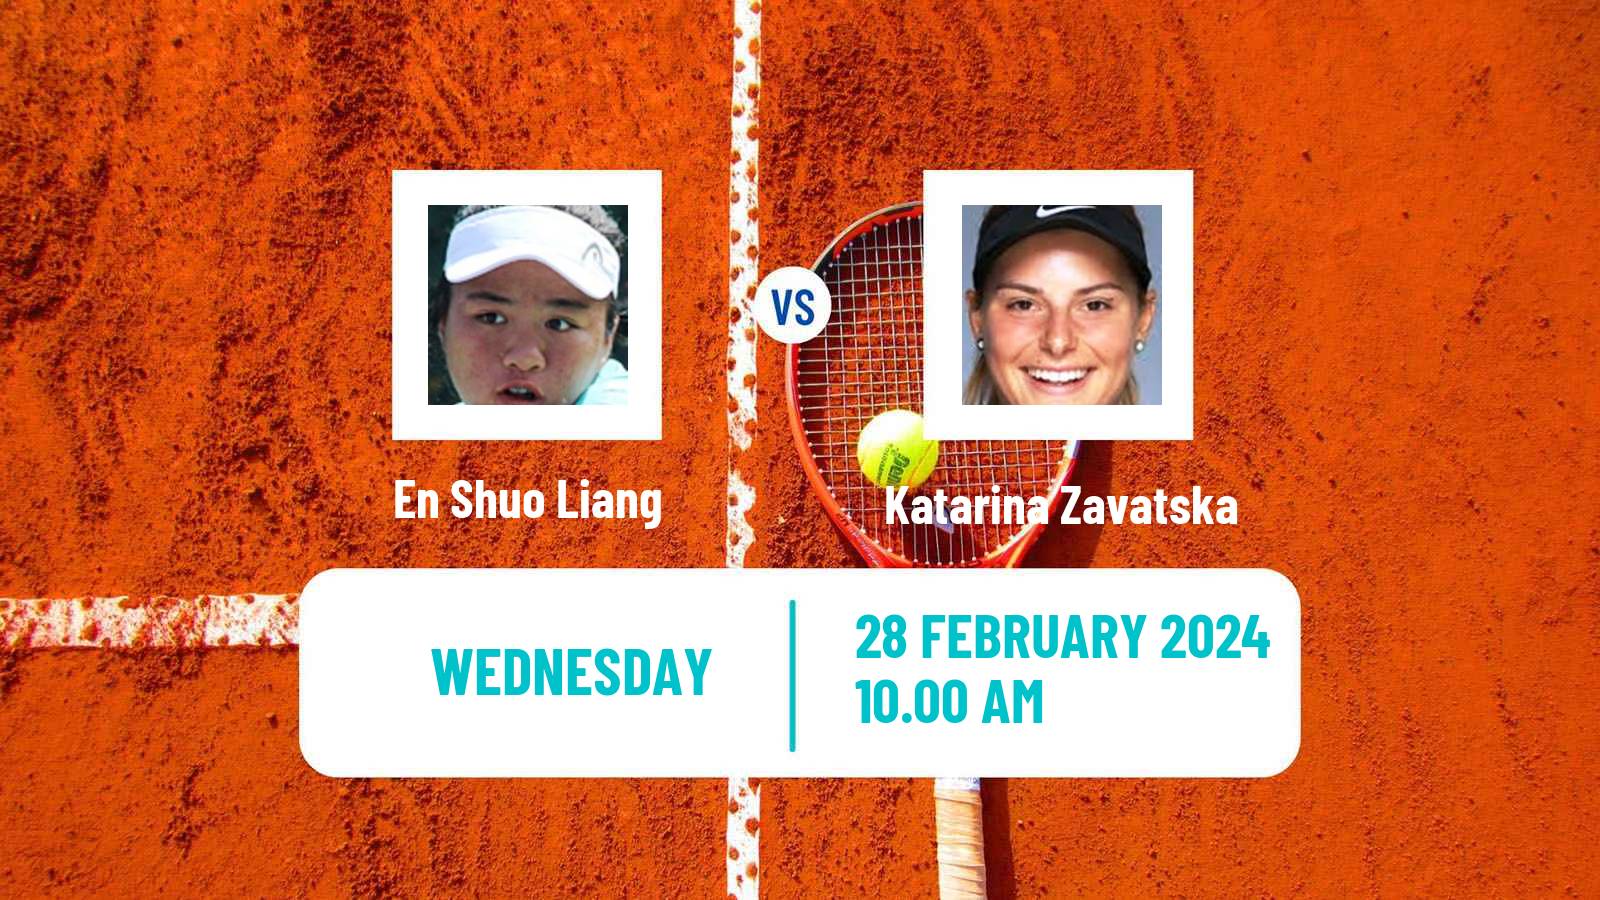 Tennis ITF W50 Trnava Women En Shuo Liang - Katarina Zavatska